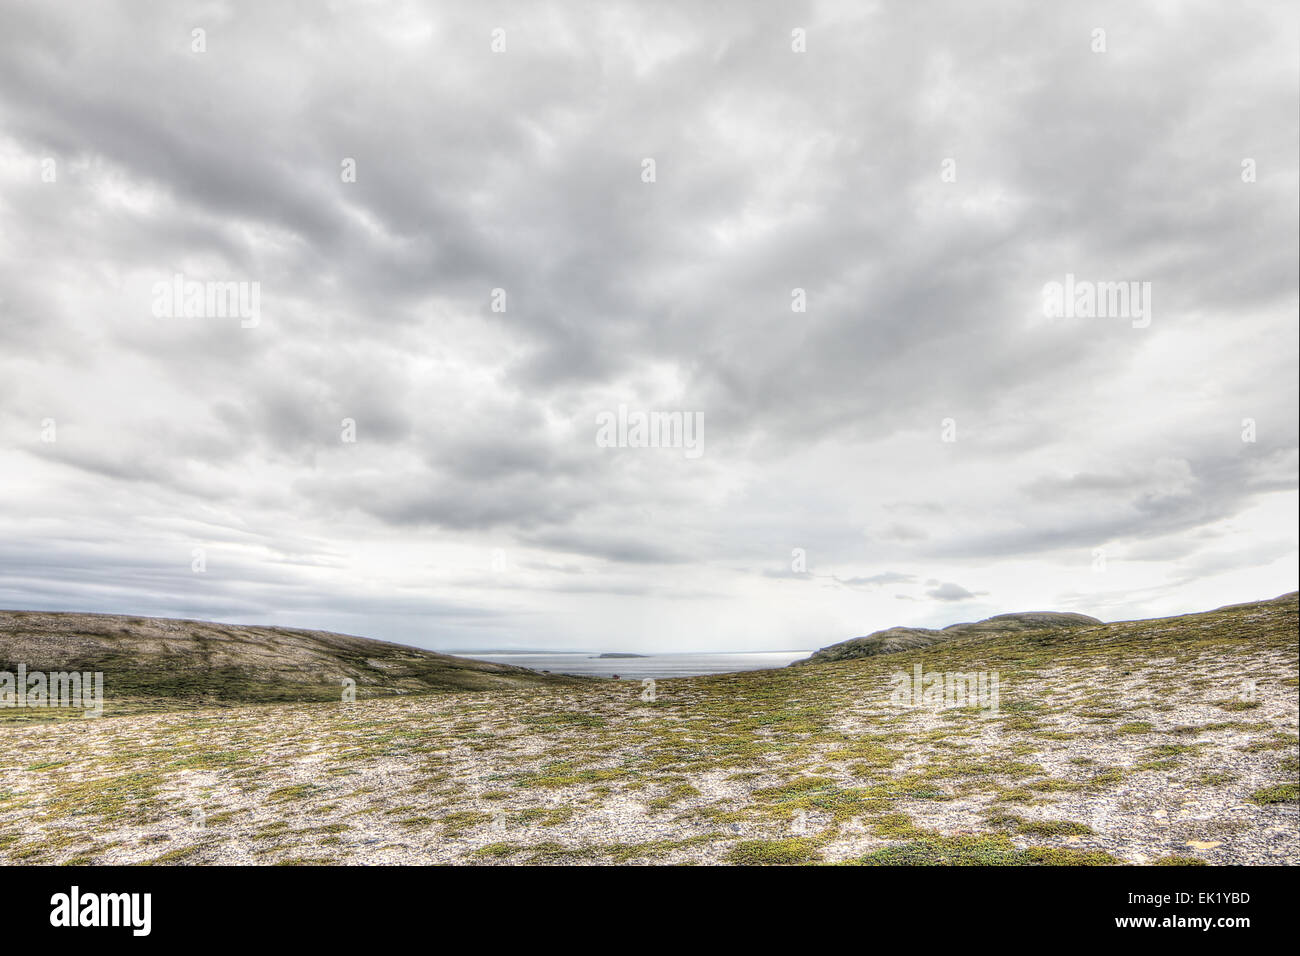 Paysage norvégien du nord avec les fjords, montagnes et sur la rive avec moss Banque D'Images